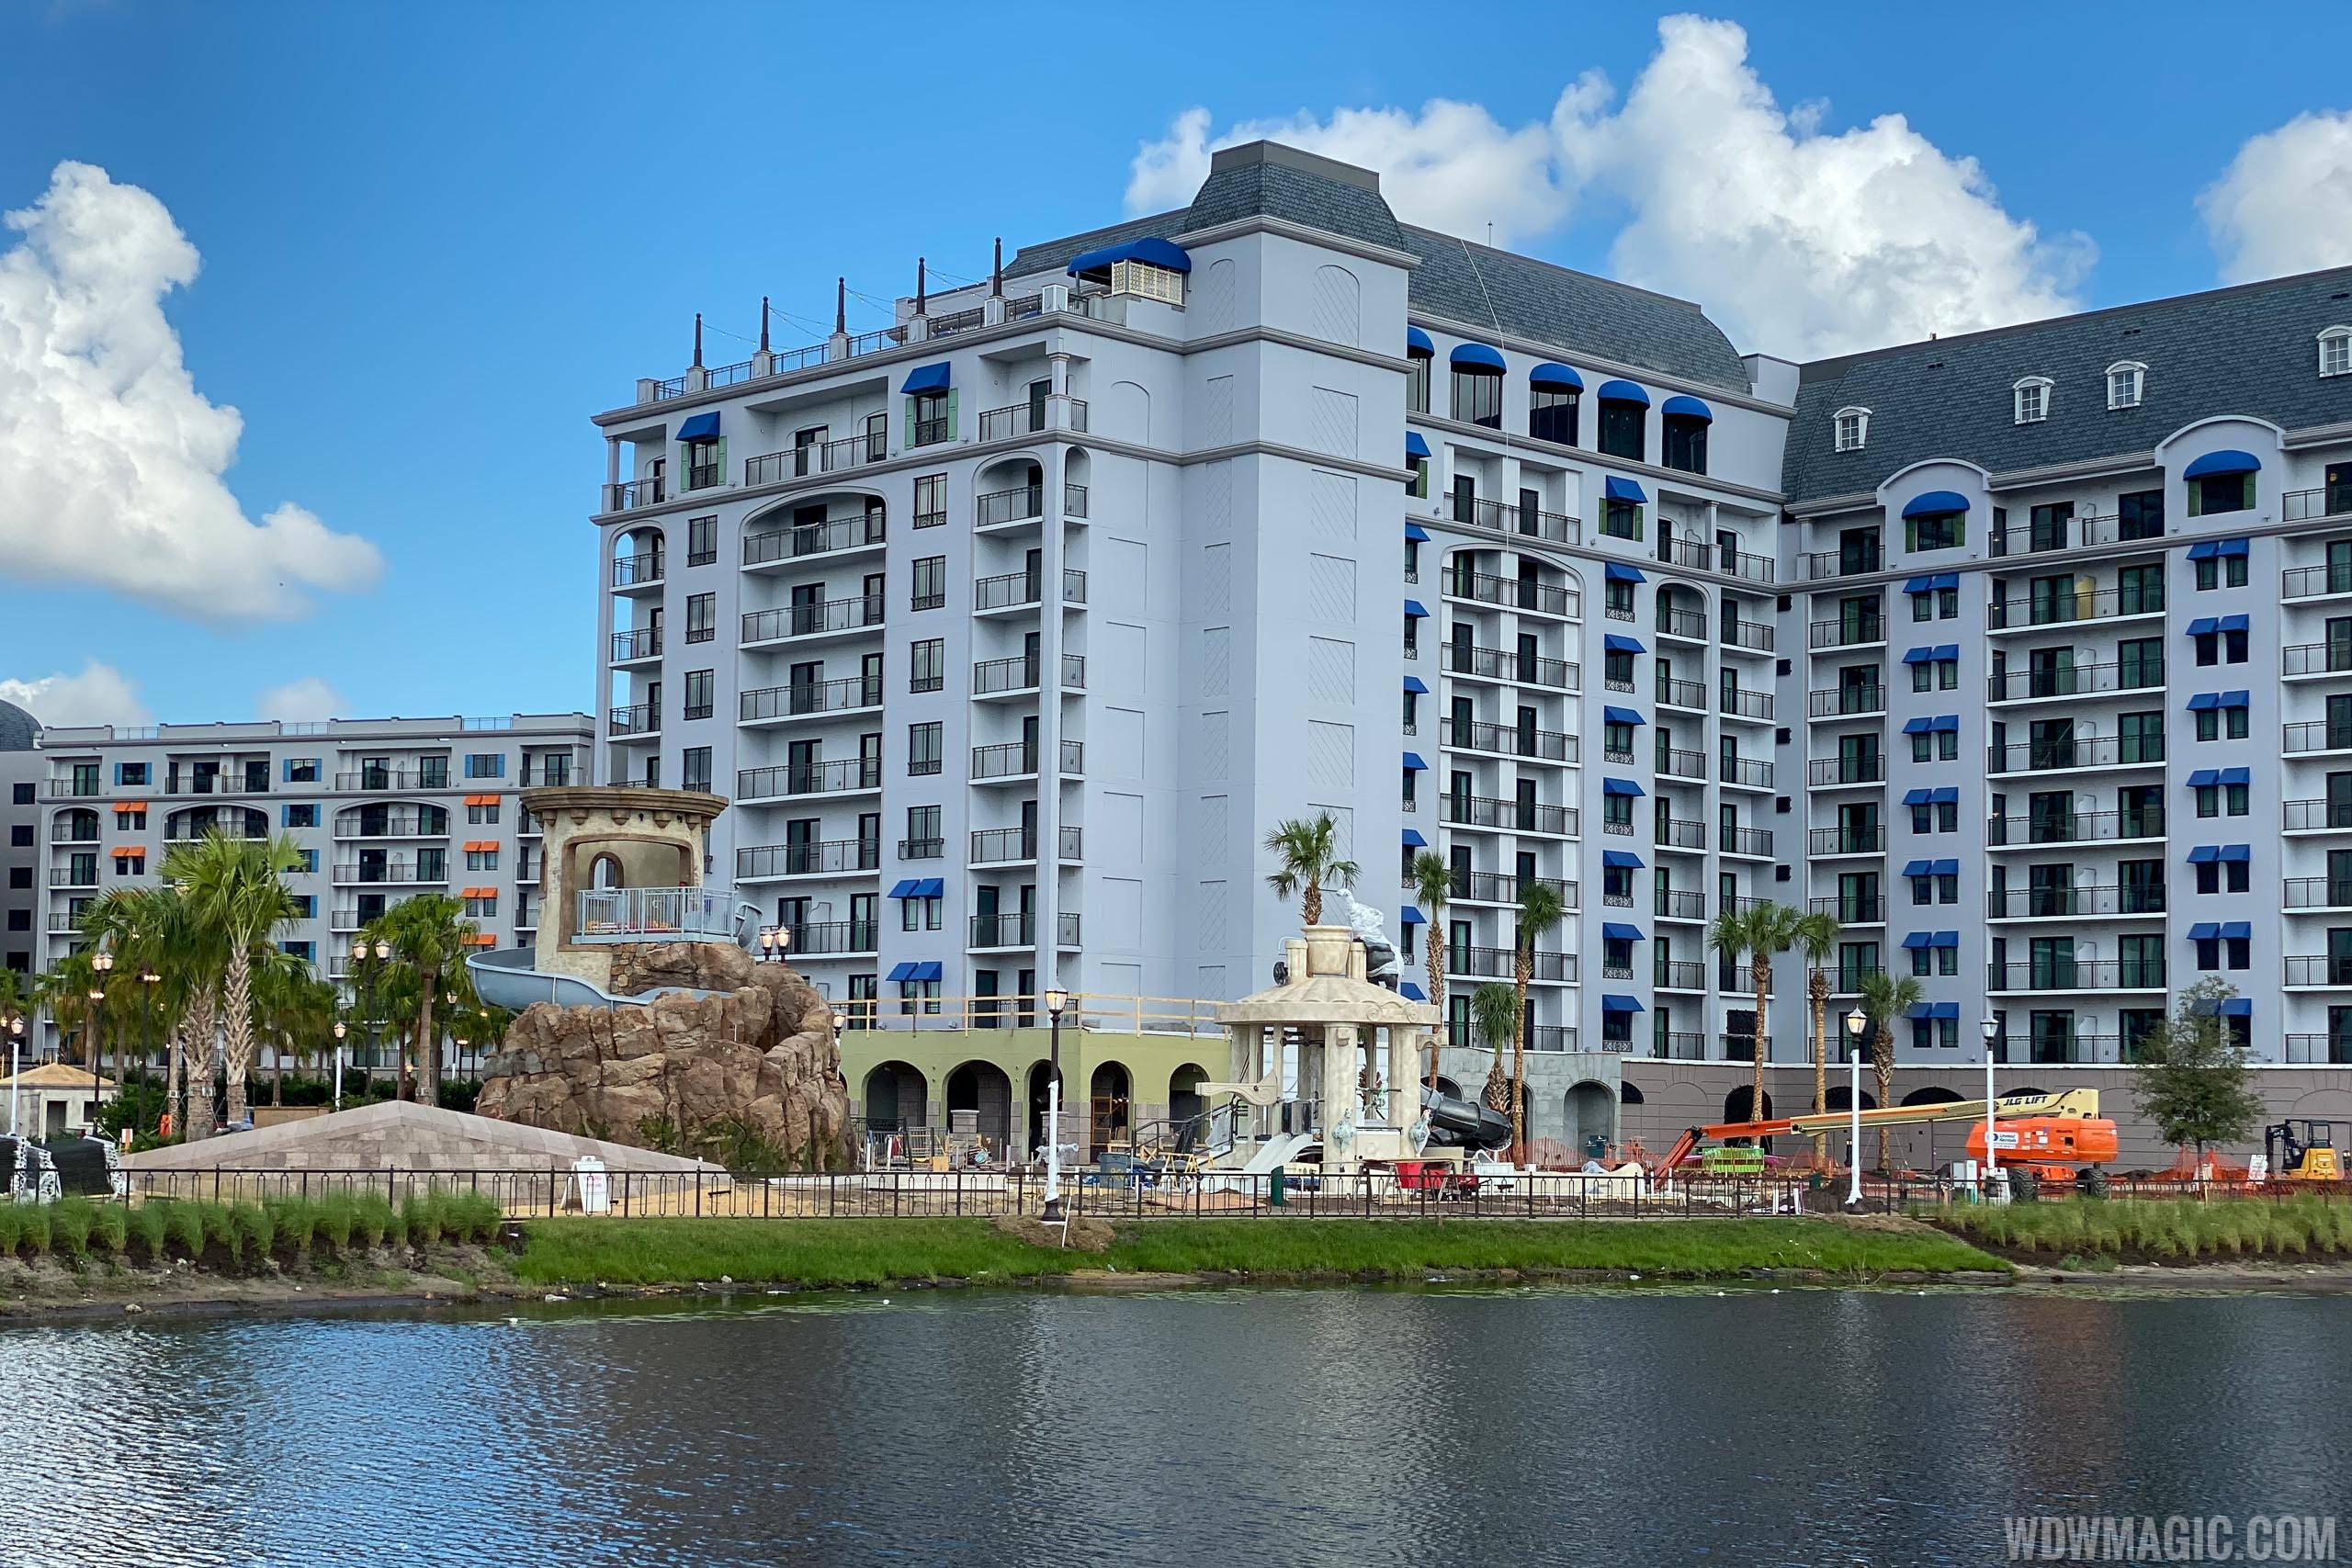 Disney's Riviera Resort construction - September 2019